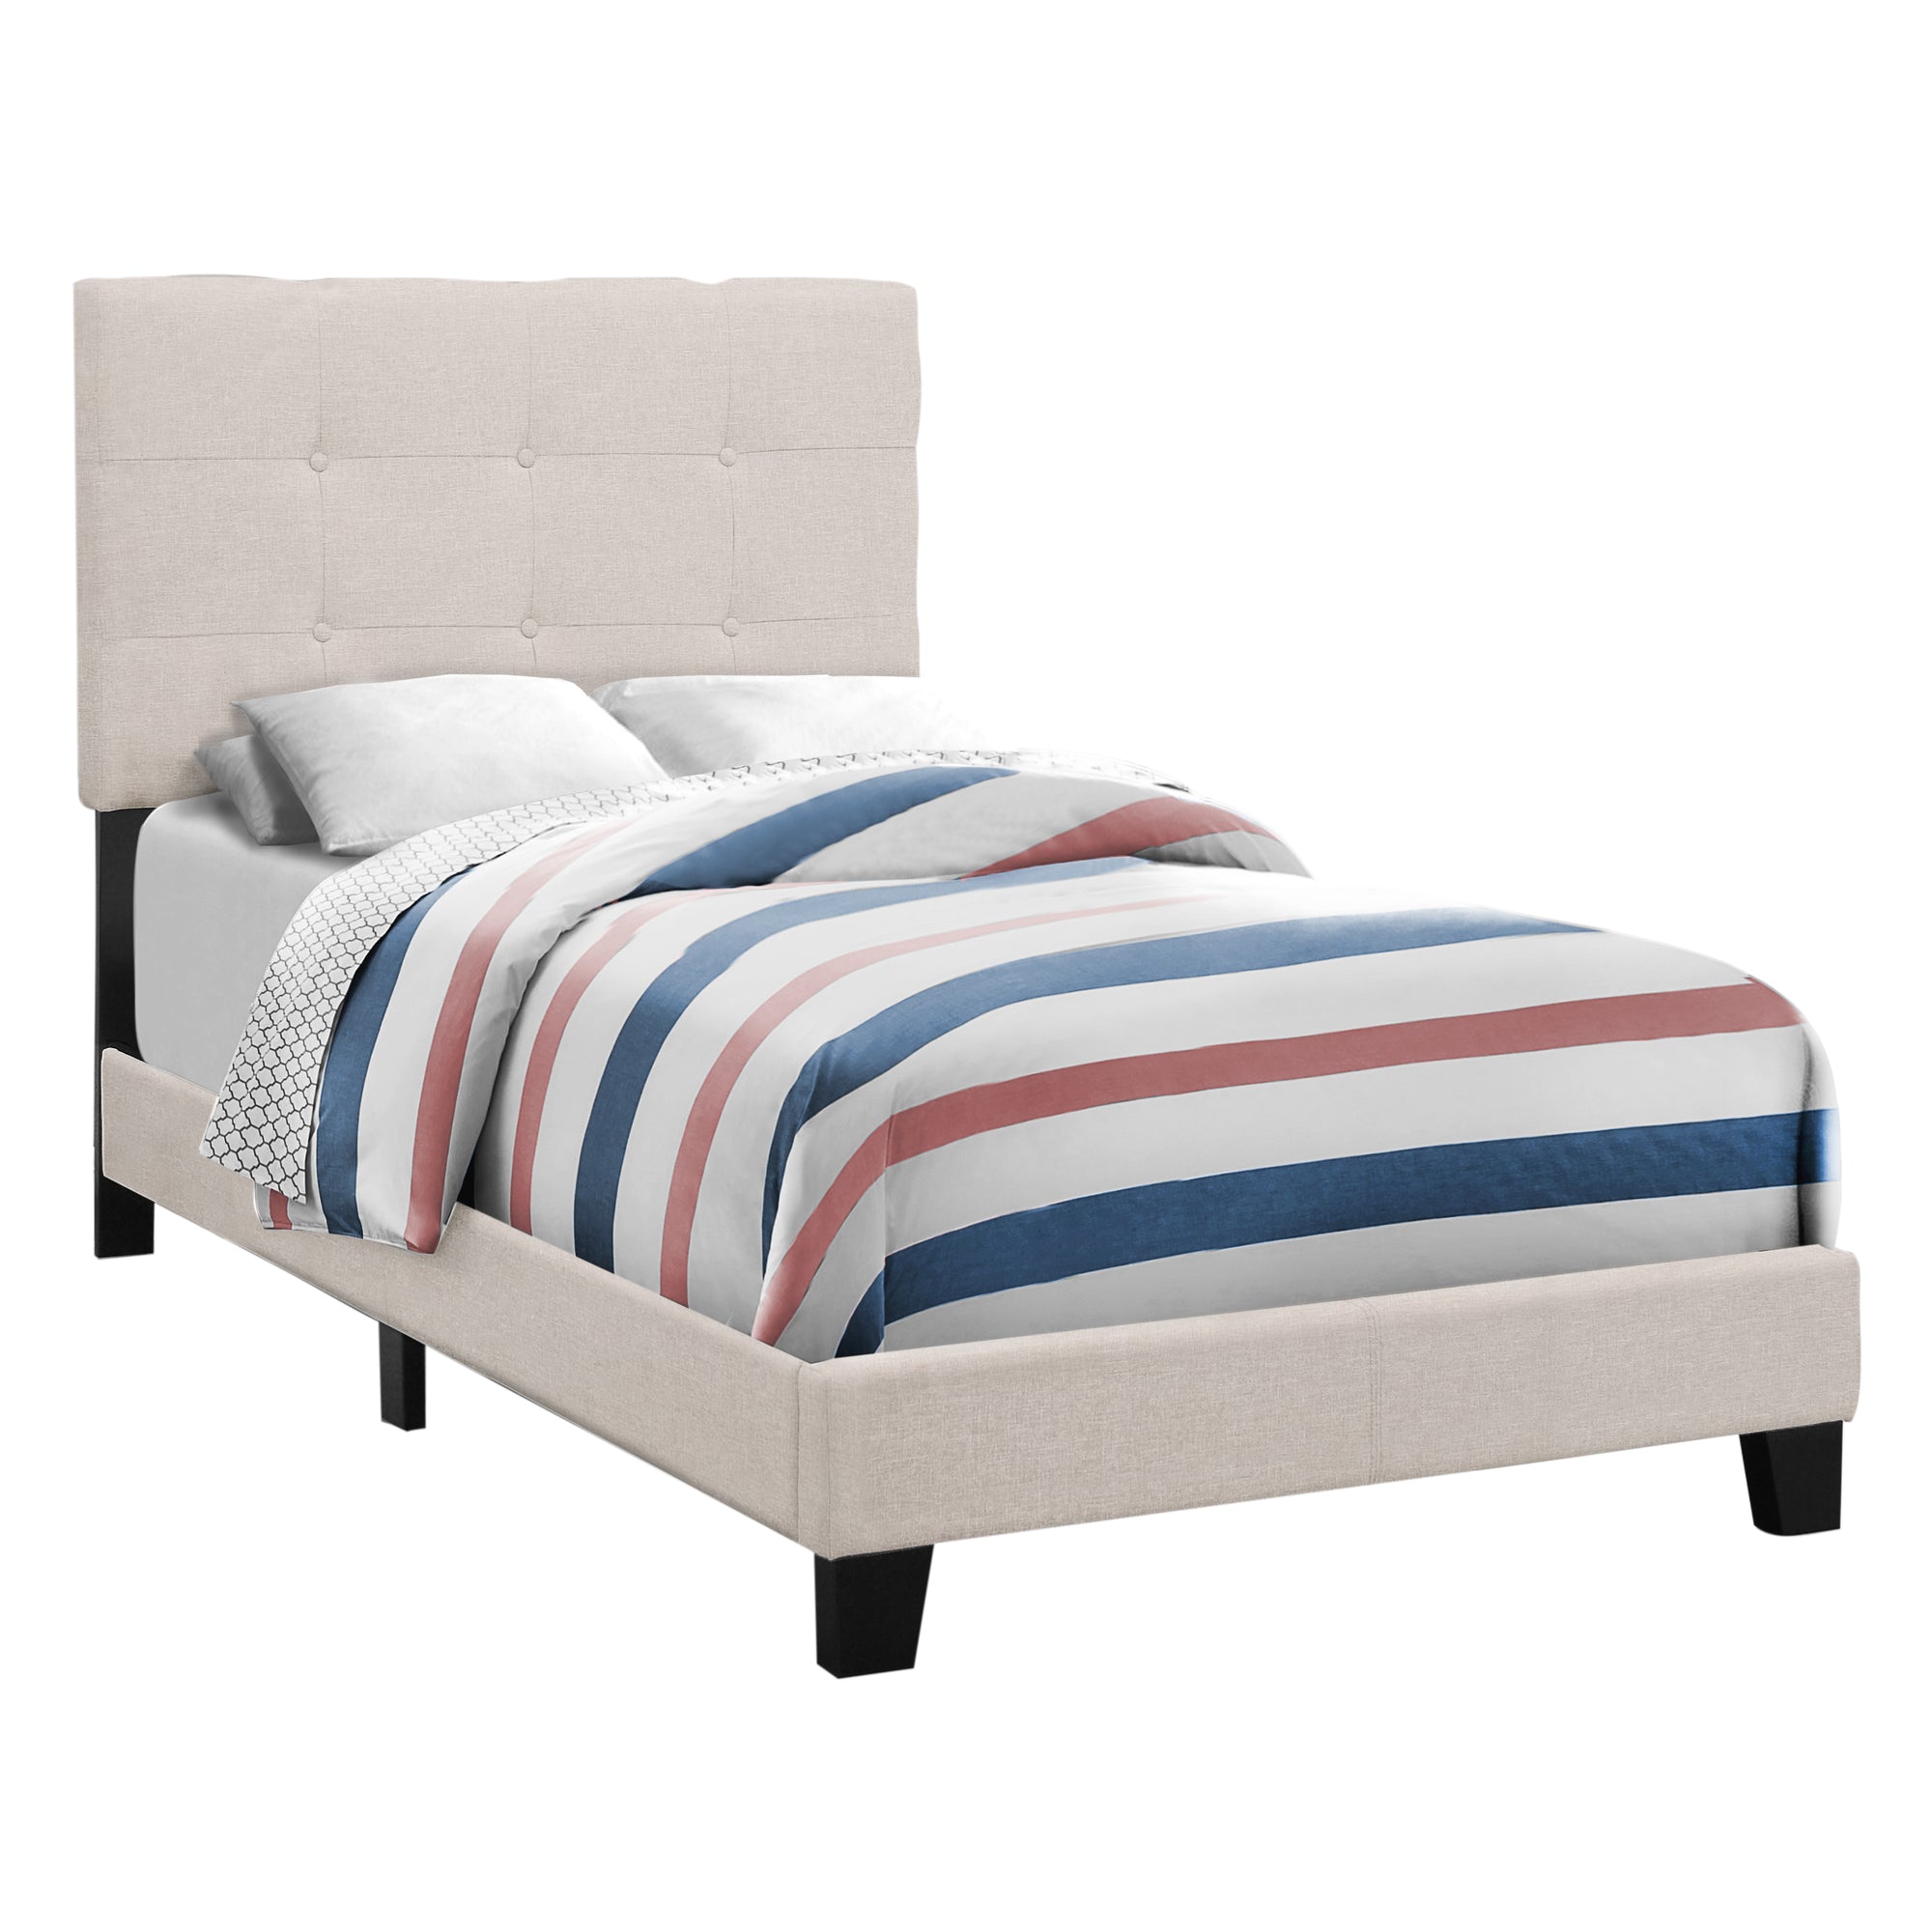 Bed - Twin Size / Beige Linen